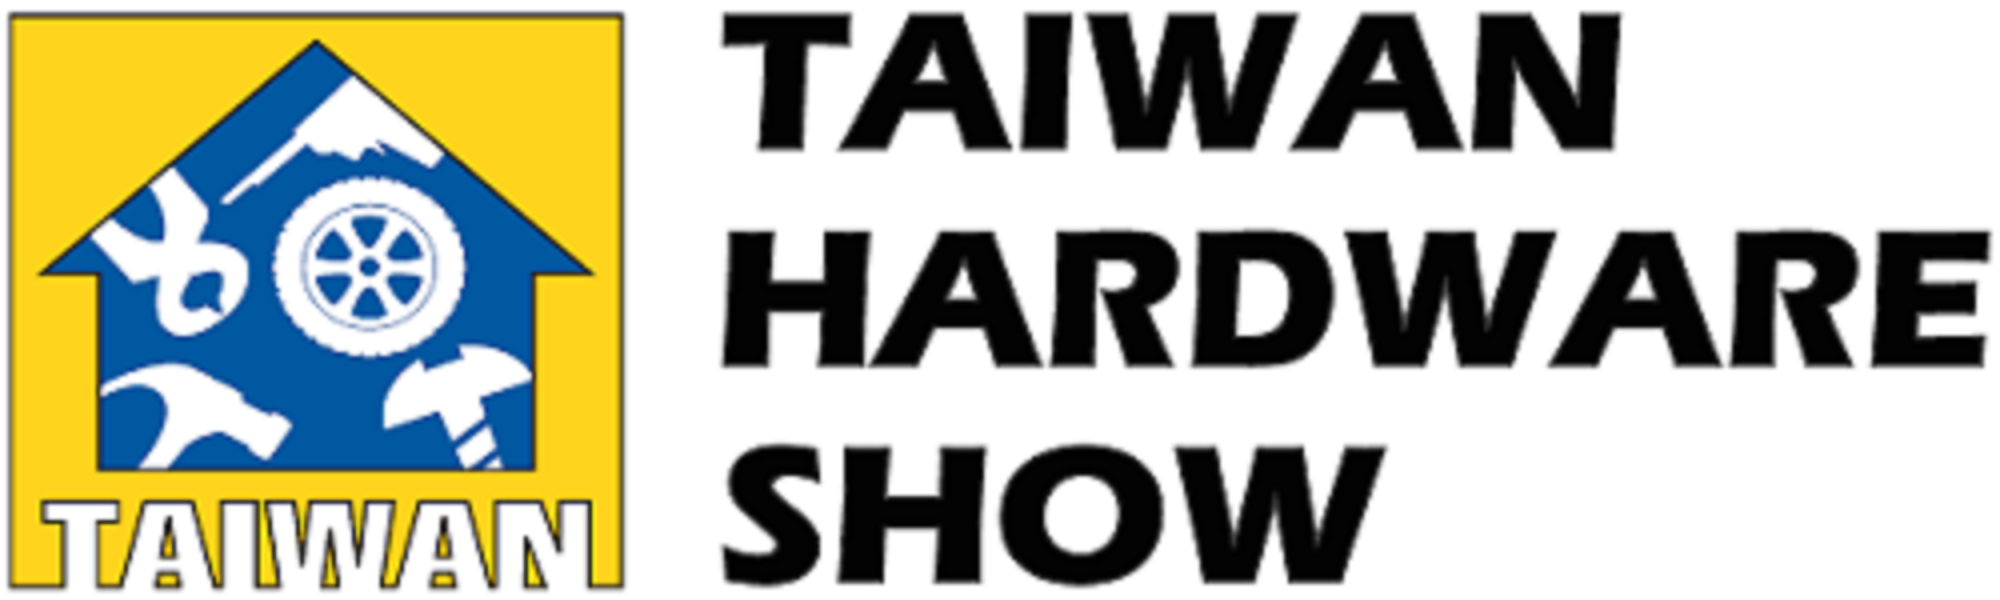 Taiwan Hardware Show 1